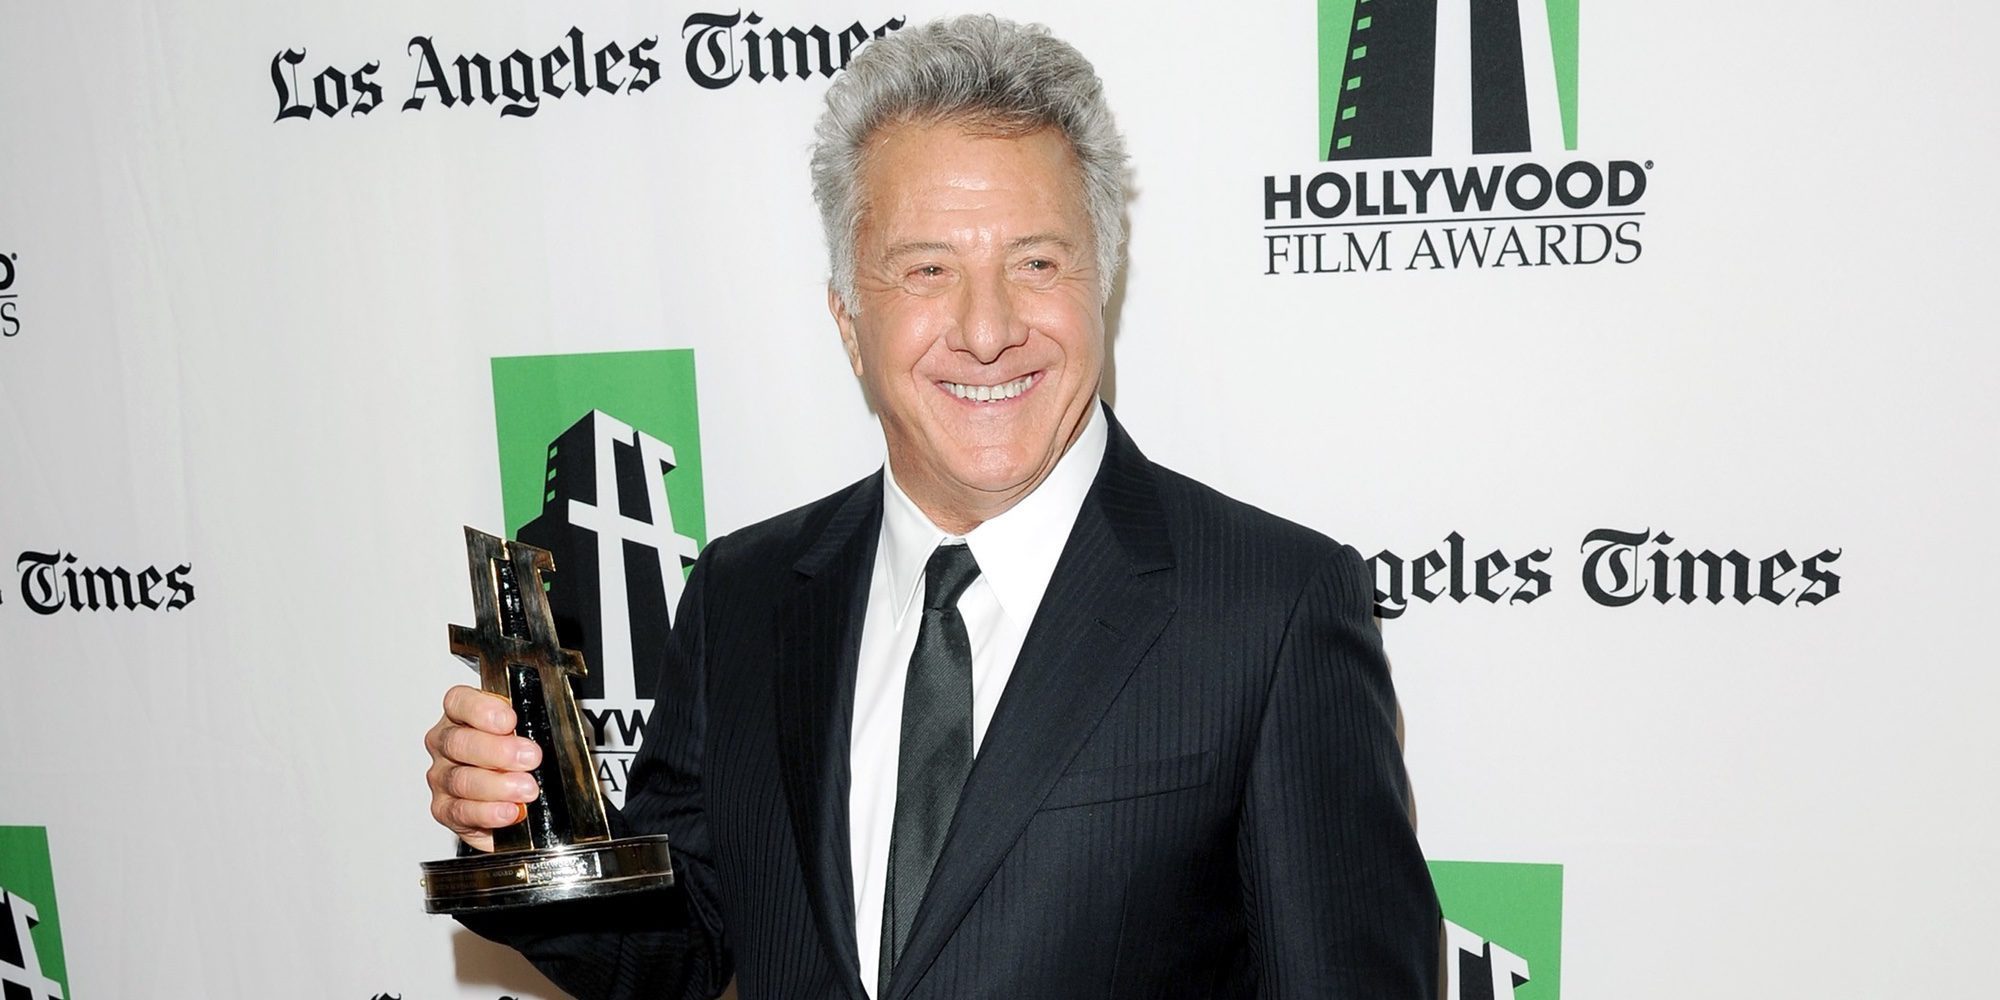 Dustin Hoffman reaparece sonriente en los Hollywood Film Awards tras la acusación de acoso sexual